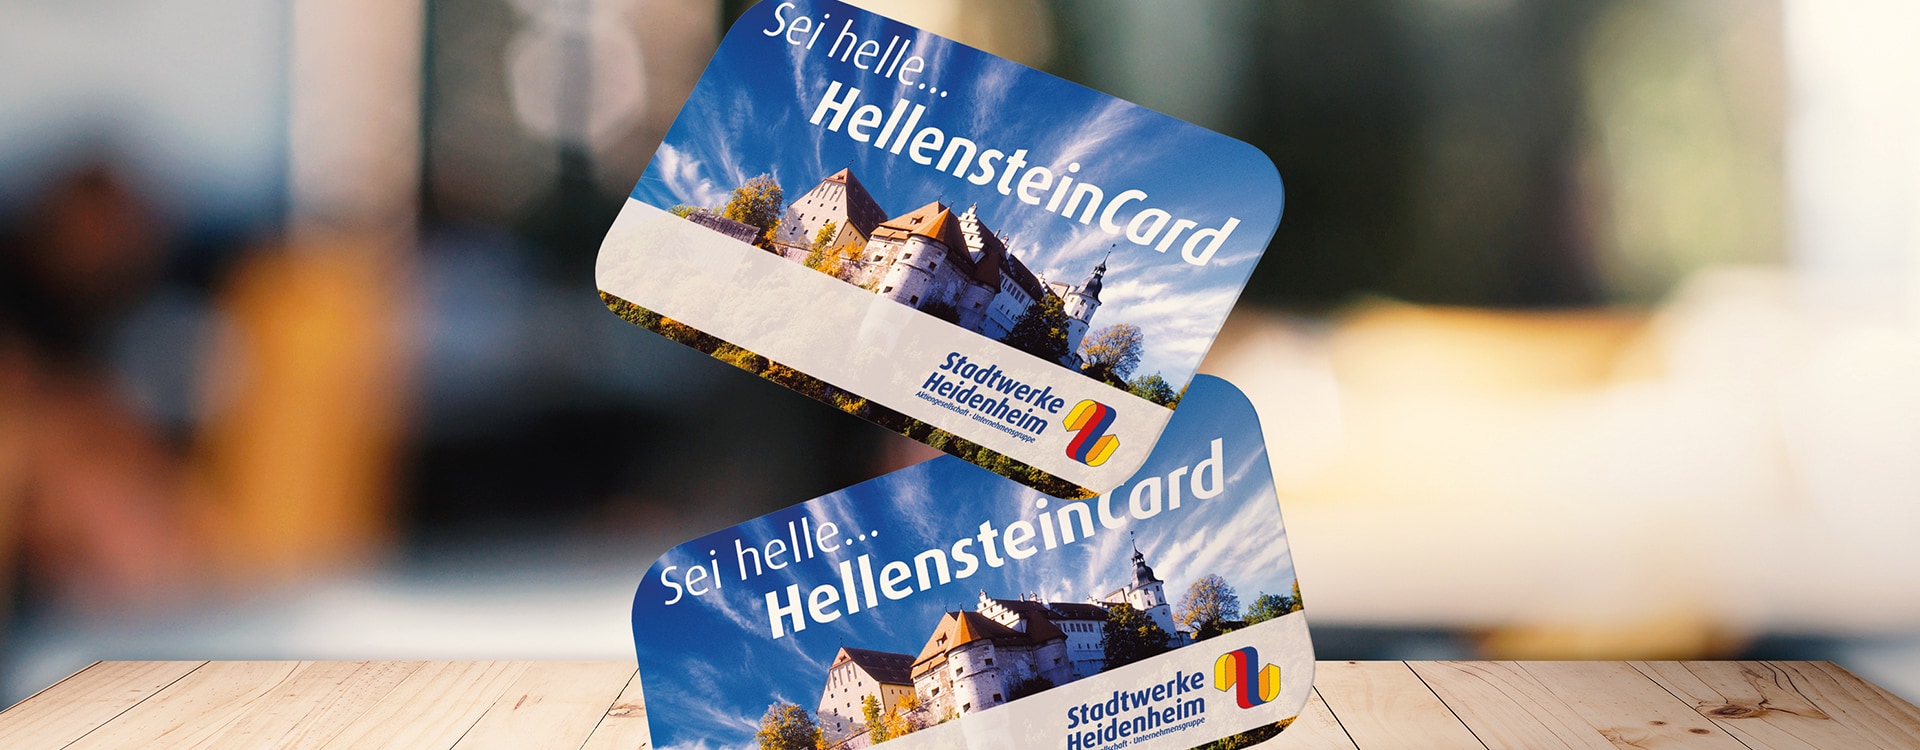 HellensteinCard